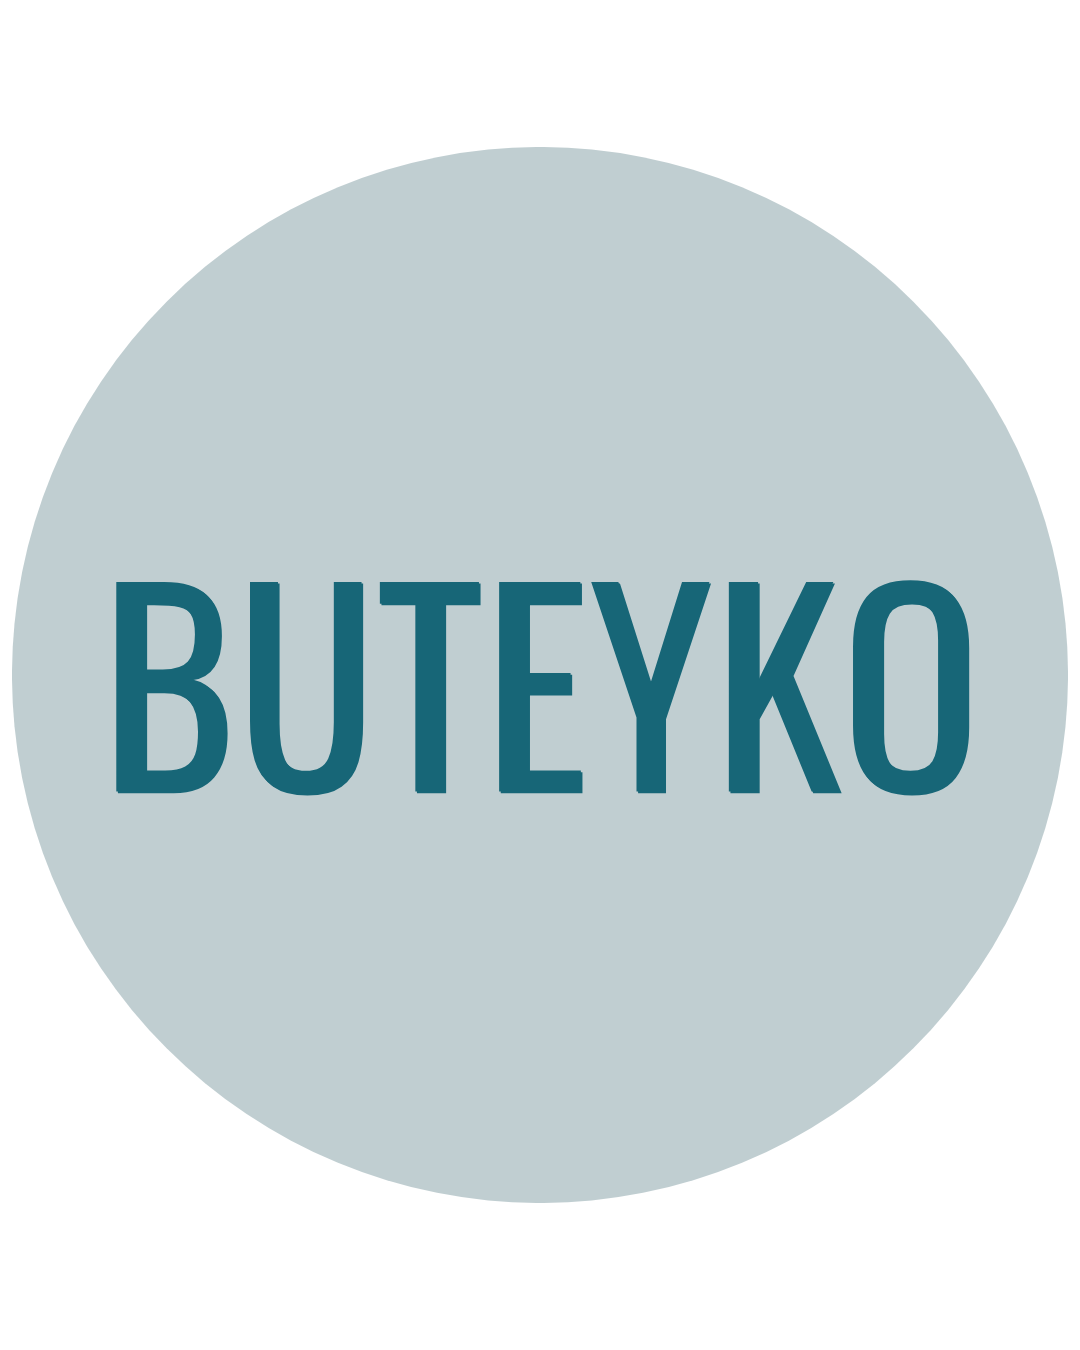 Buteyko